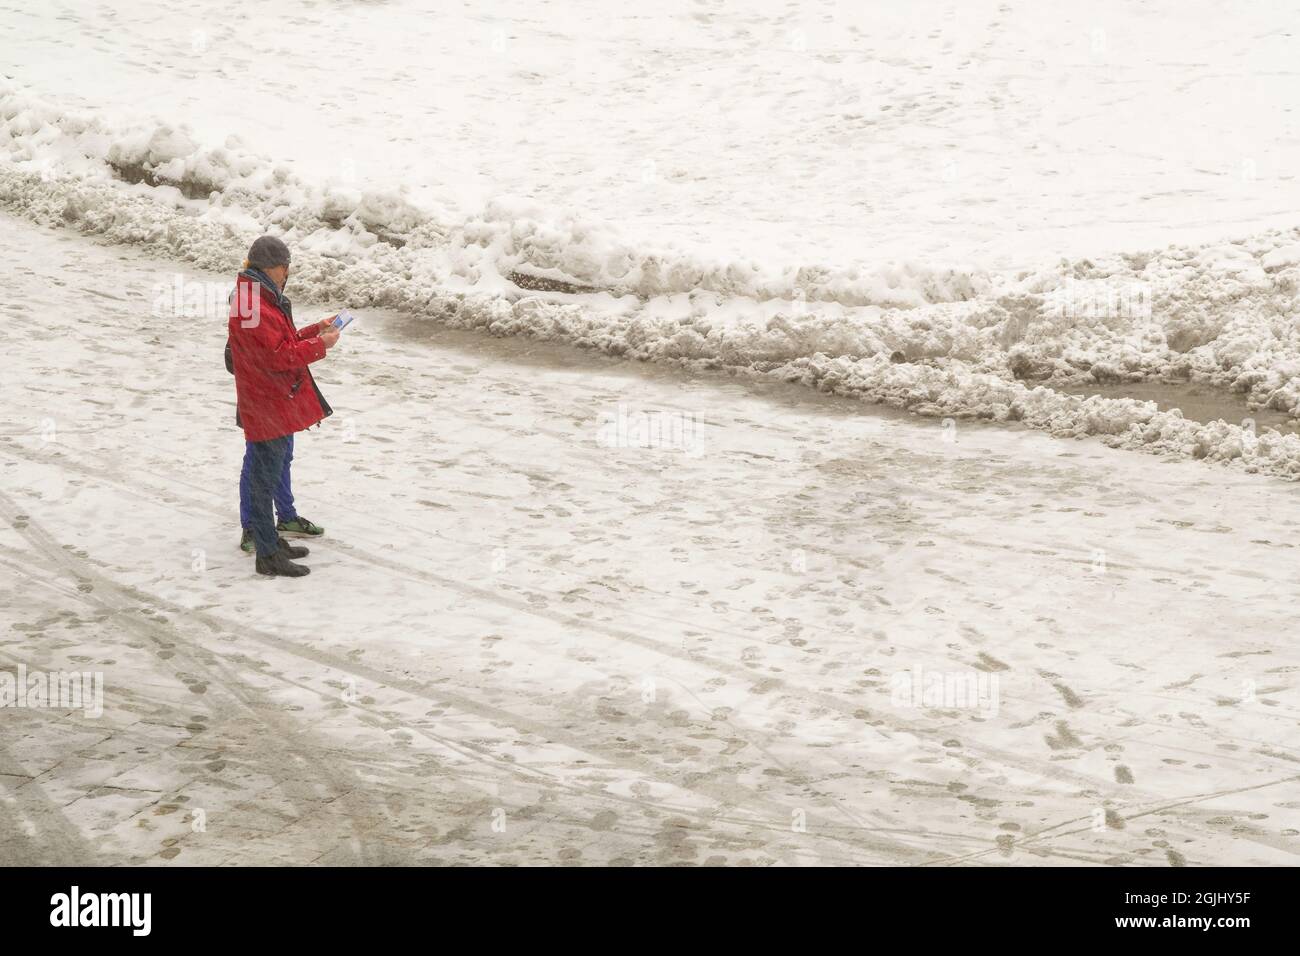 Bolonia, Italia. 01st Mar, 2018. Un paseo turístico por Piazza Maggiore cubierto de nieve. La 'Bestia del Este', un tiempo inusualmente frío y nevado, s Foto de stock